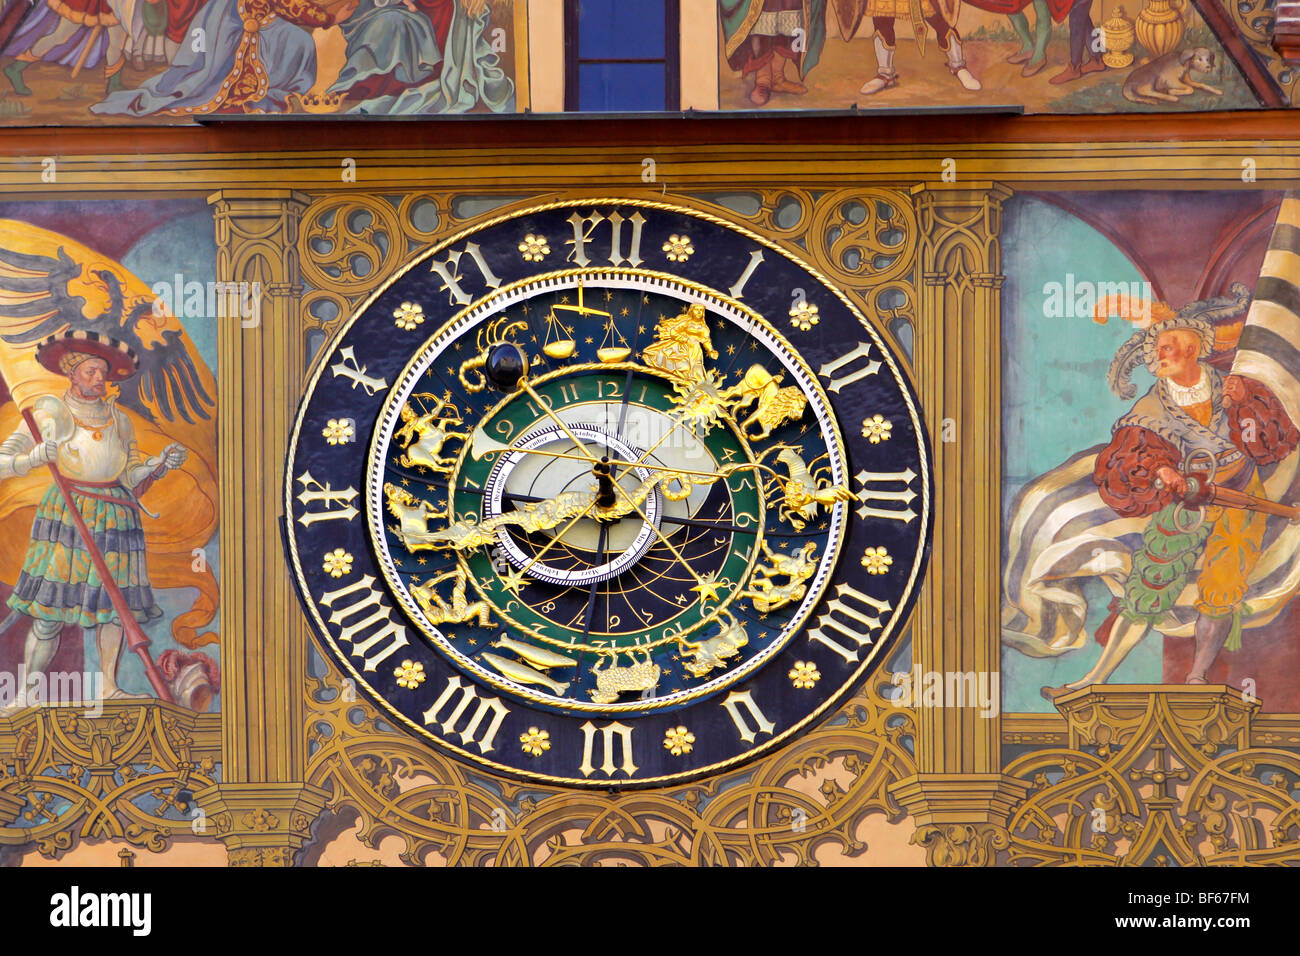 Deutschland Astronomische Uhr am Ulmer Rathaus, Germany astronomical clock, town hall in Ulm Stock Photo